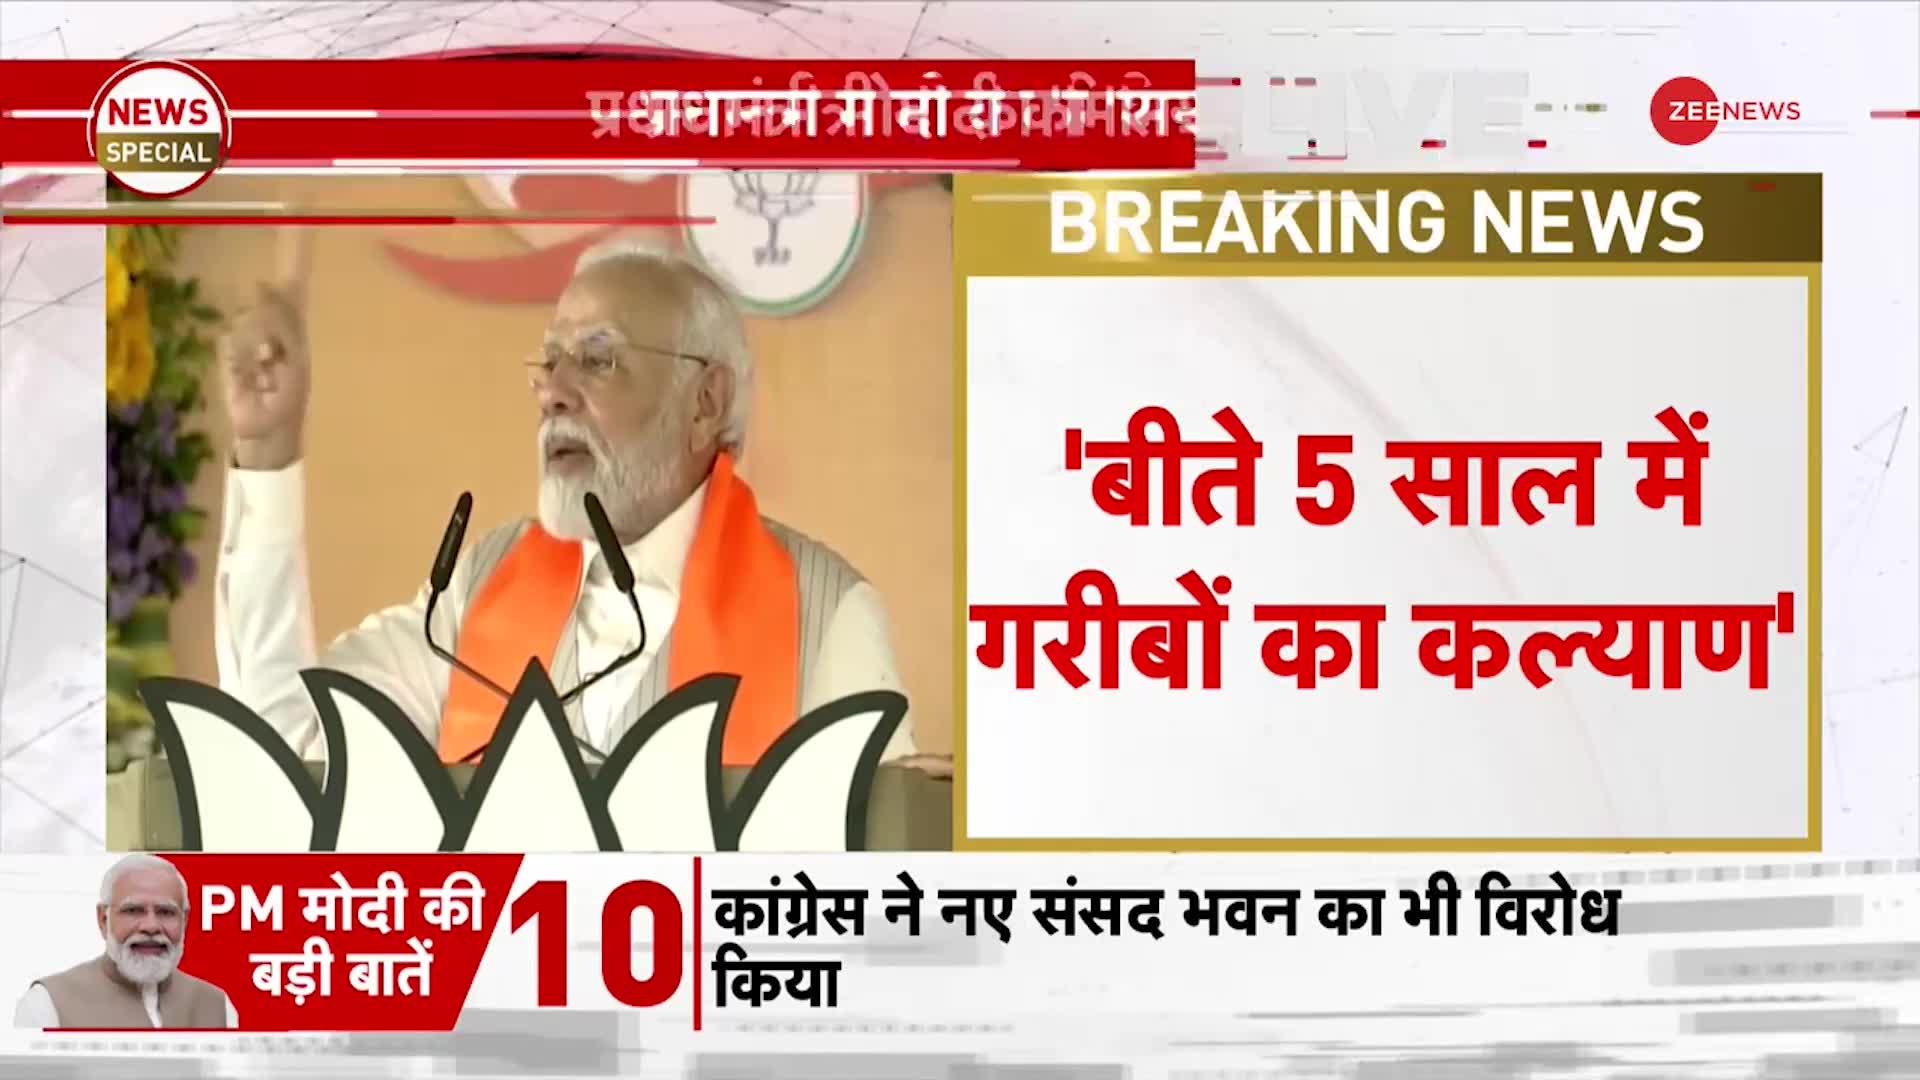 PM Modi Bhopal Speech: प्रधानमंत्री मोदी का विपक्ष पर कड़ा प्रहार, 'आप MP को तबाह करना चाहते हो?'